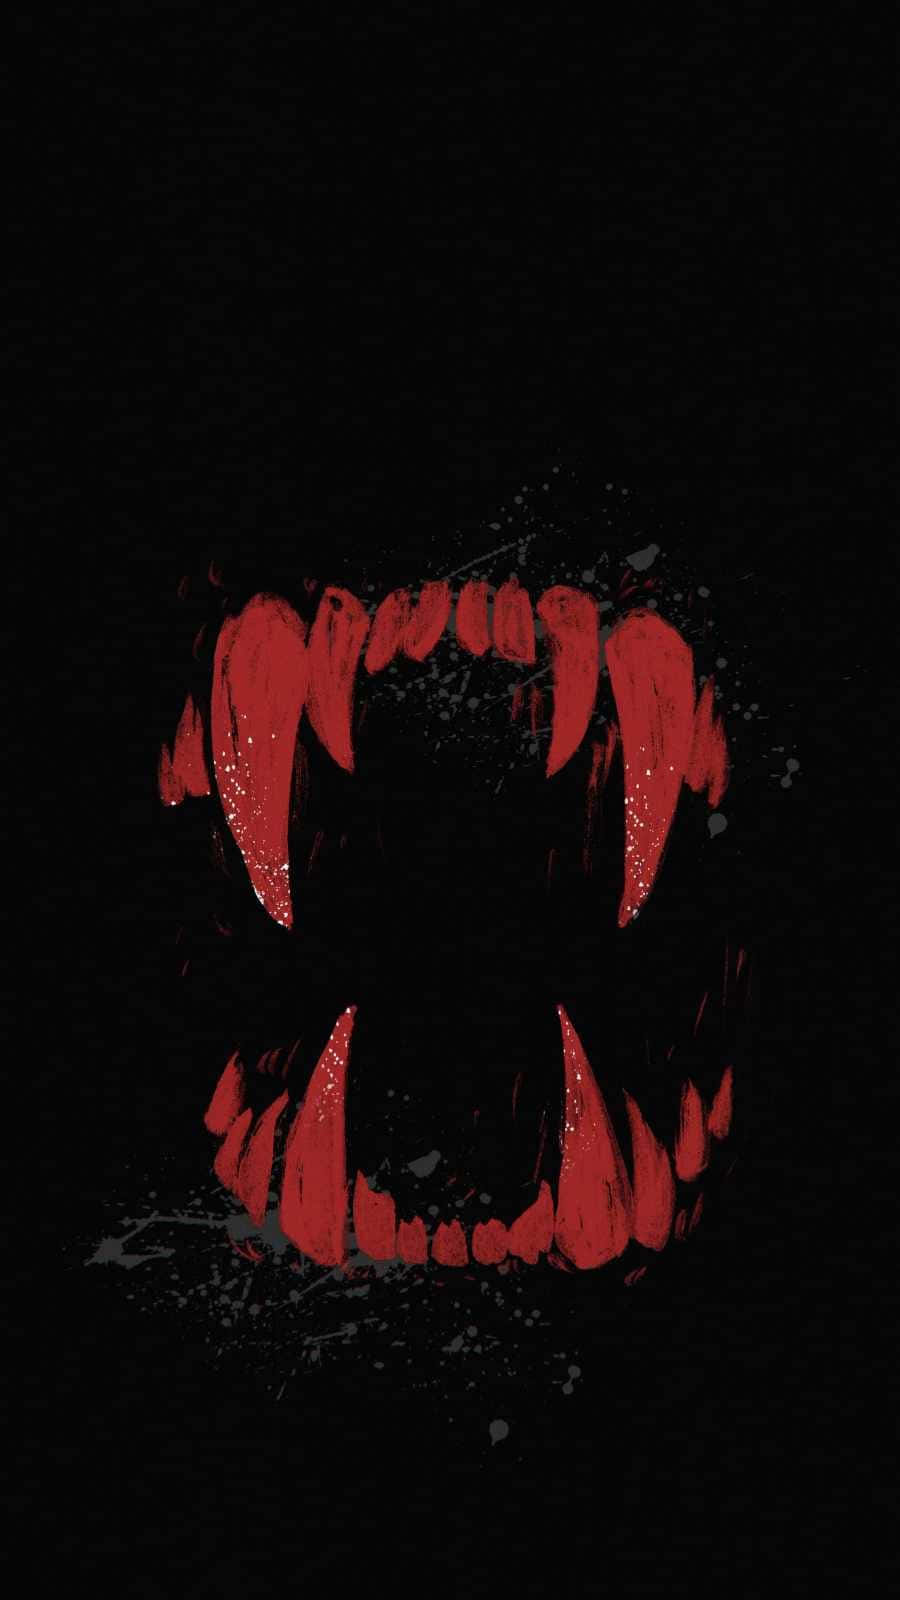 Einschwarzer Hintergrund Mit Roten Zähnen Darauf Wallpaper